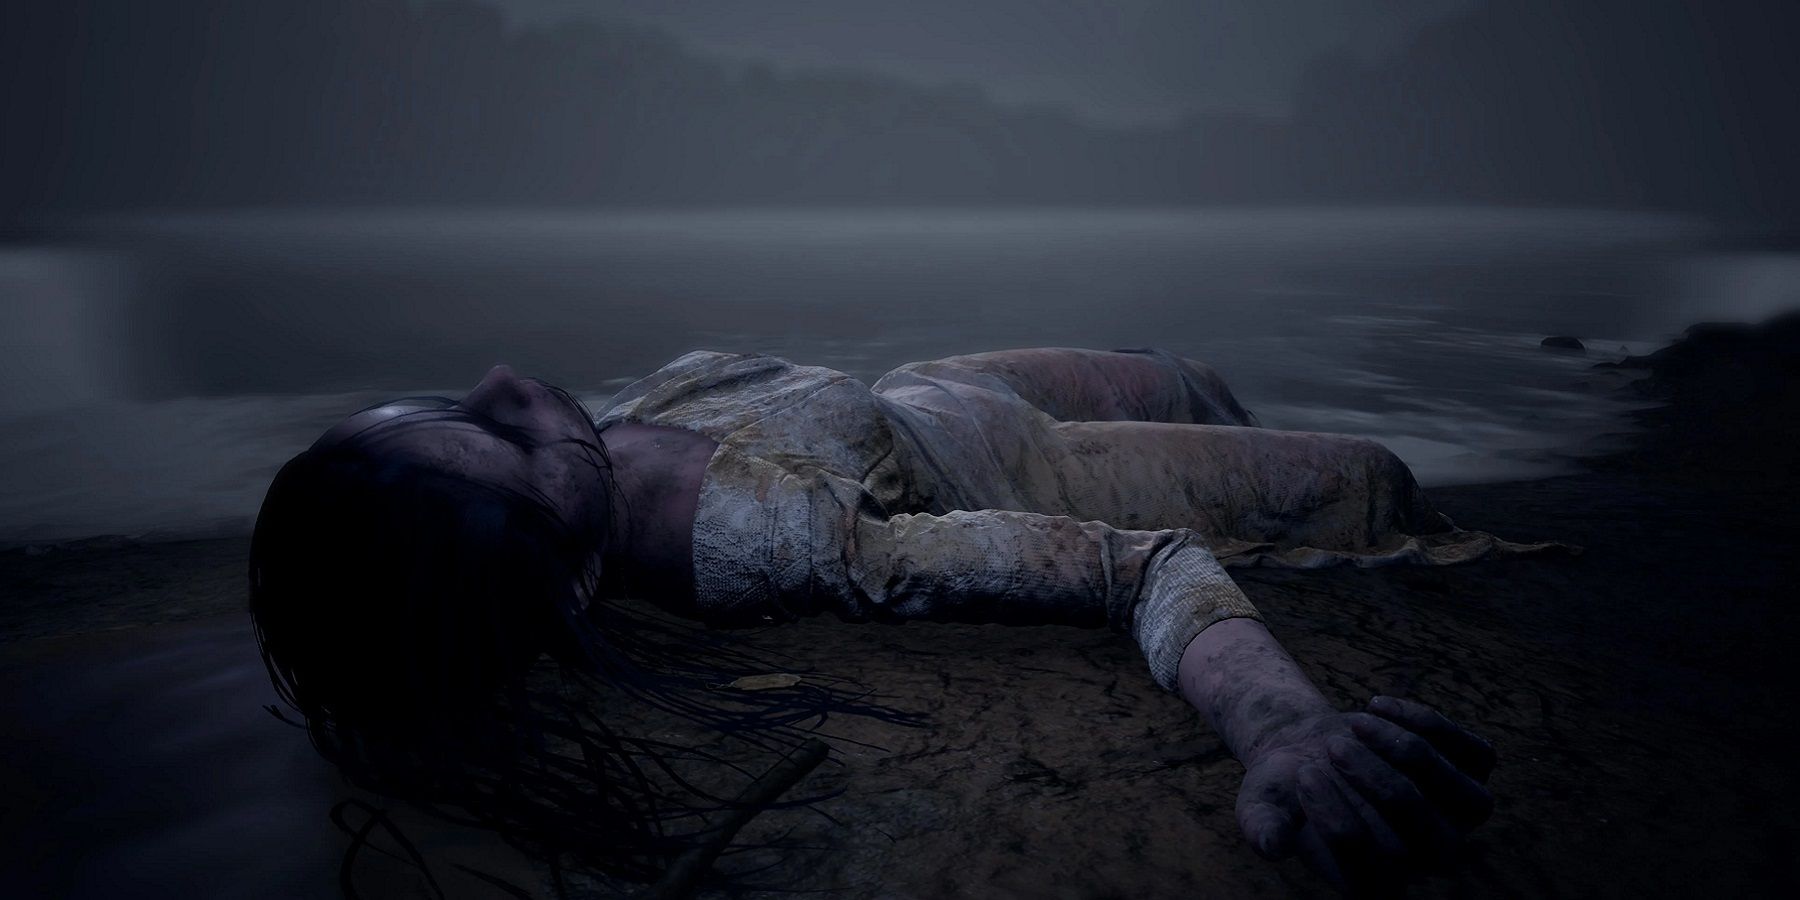 Immagine da Martha is Dead che mostra una donna morta lavata a riva.